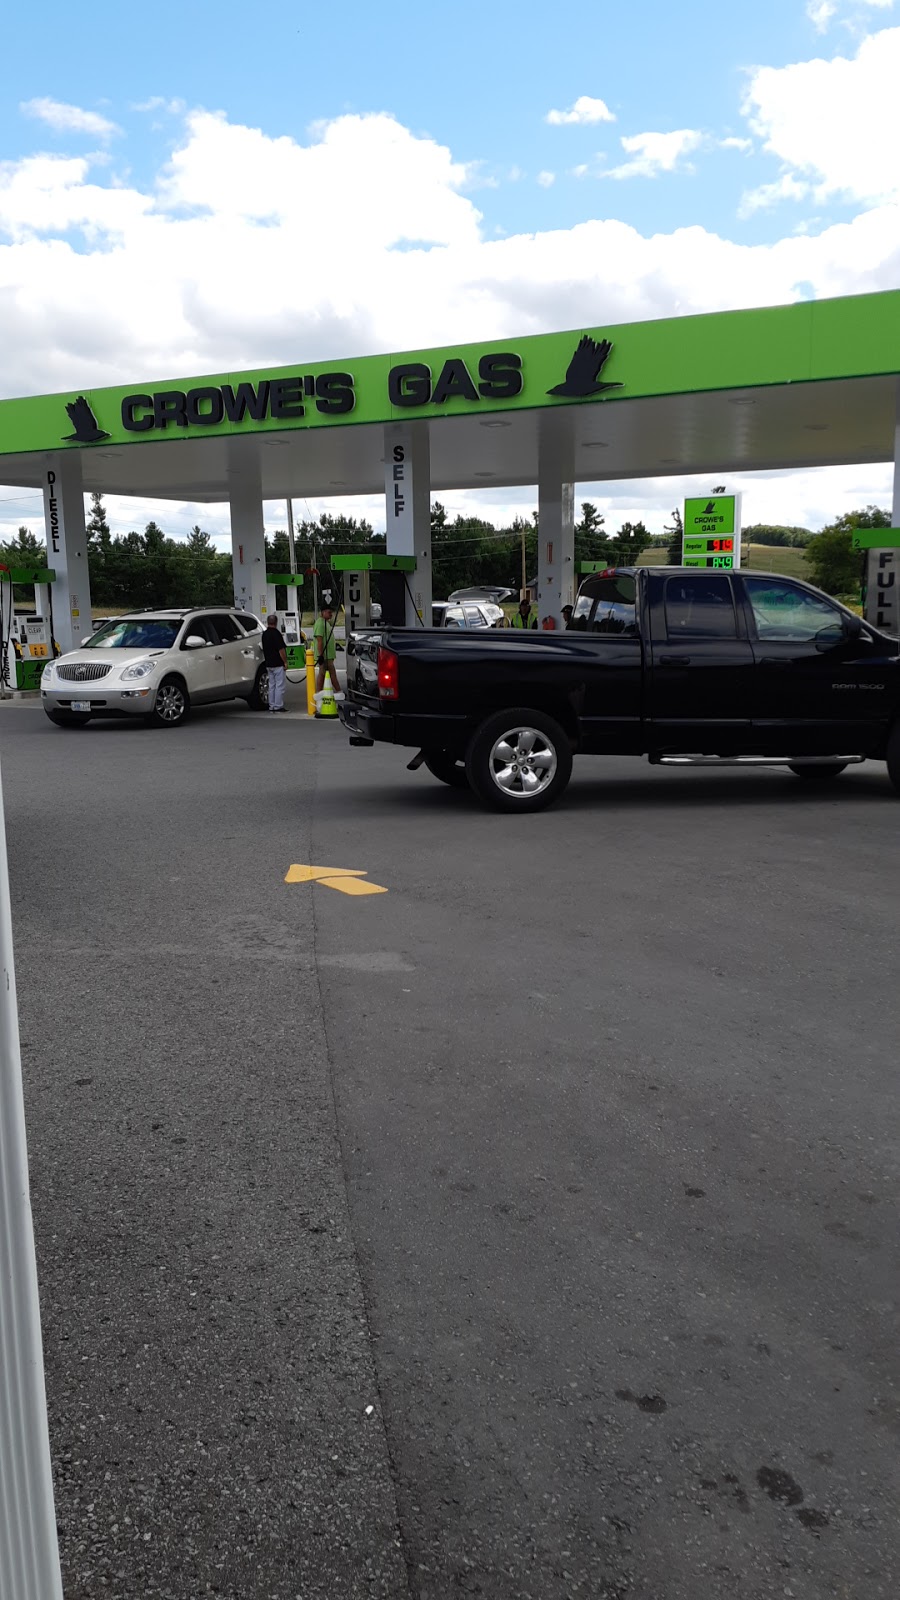 Crowe’s Gas | gas station | 8454 45, Roseneath, ON K0K 2X0, Canada | 9053522622 OR +1 905-352-2622